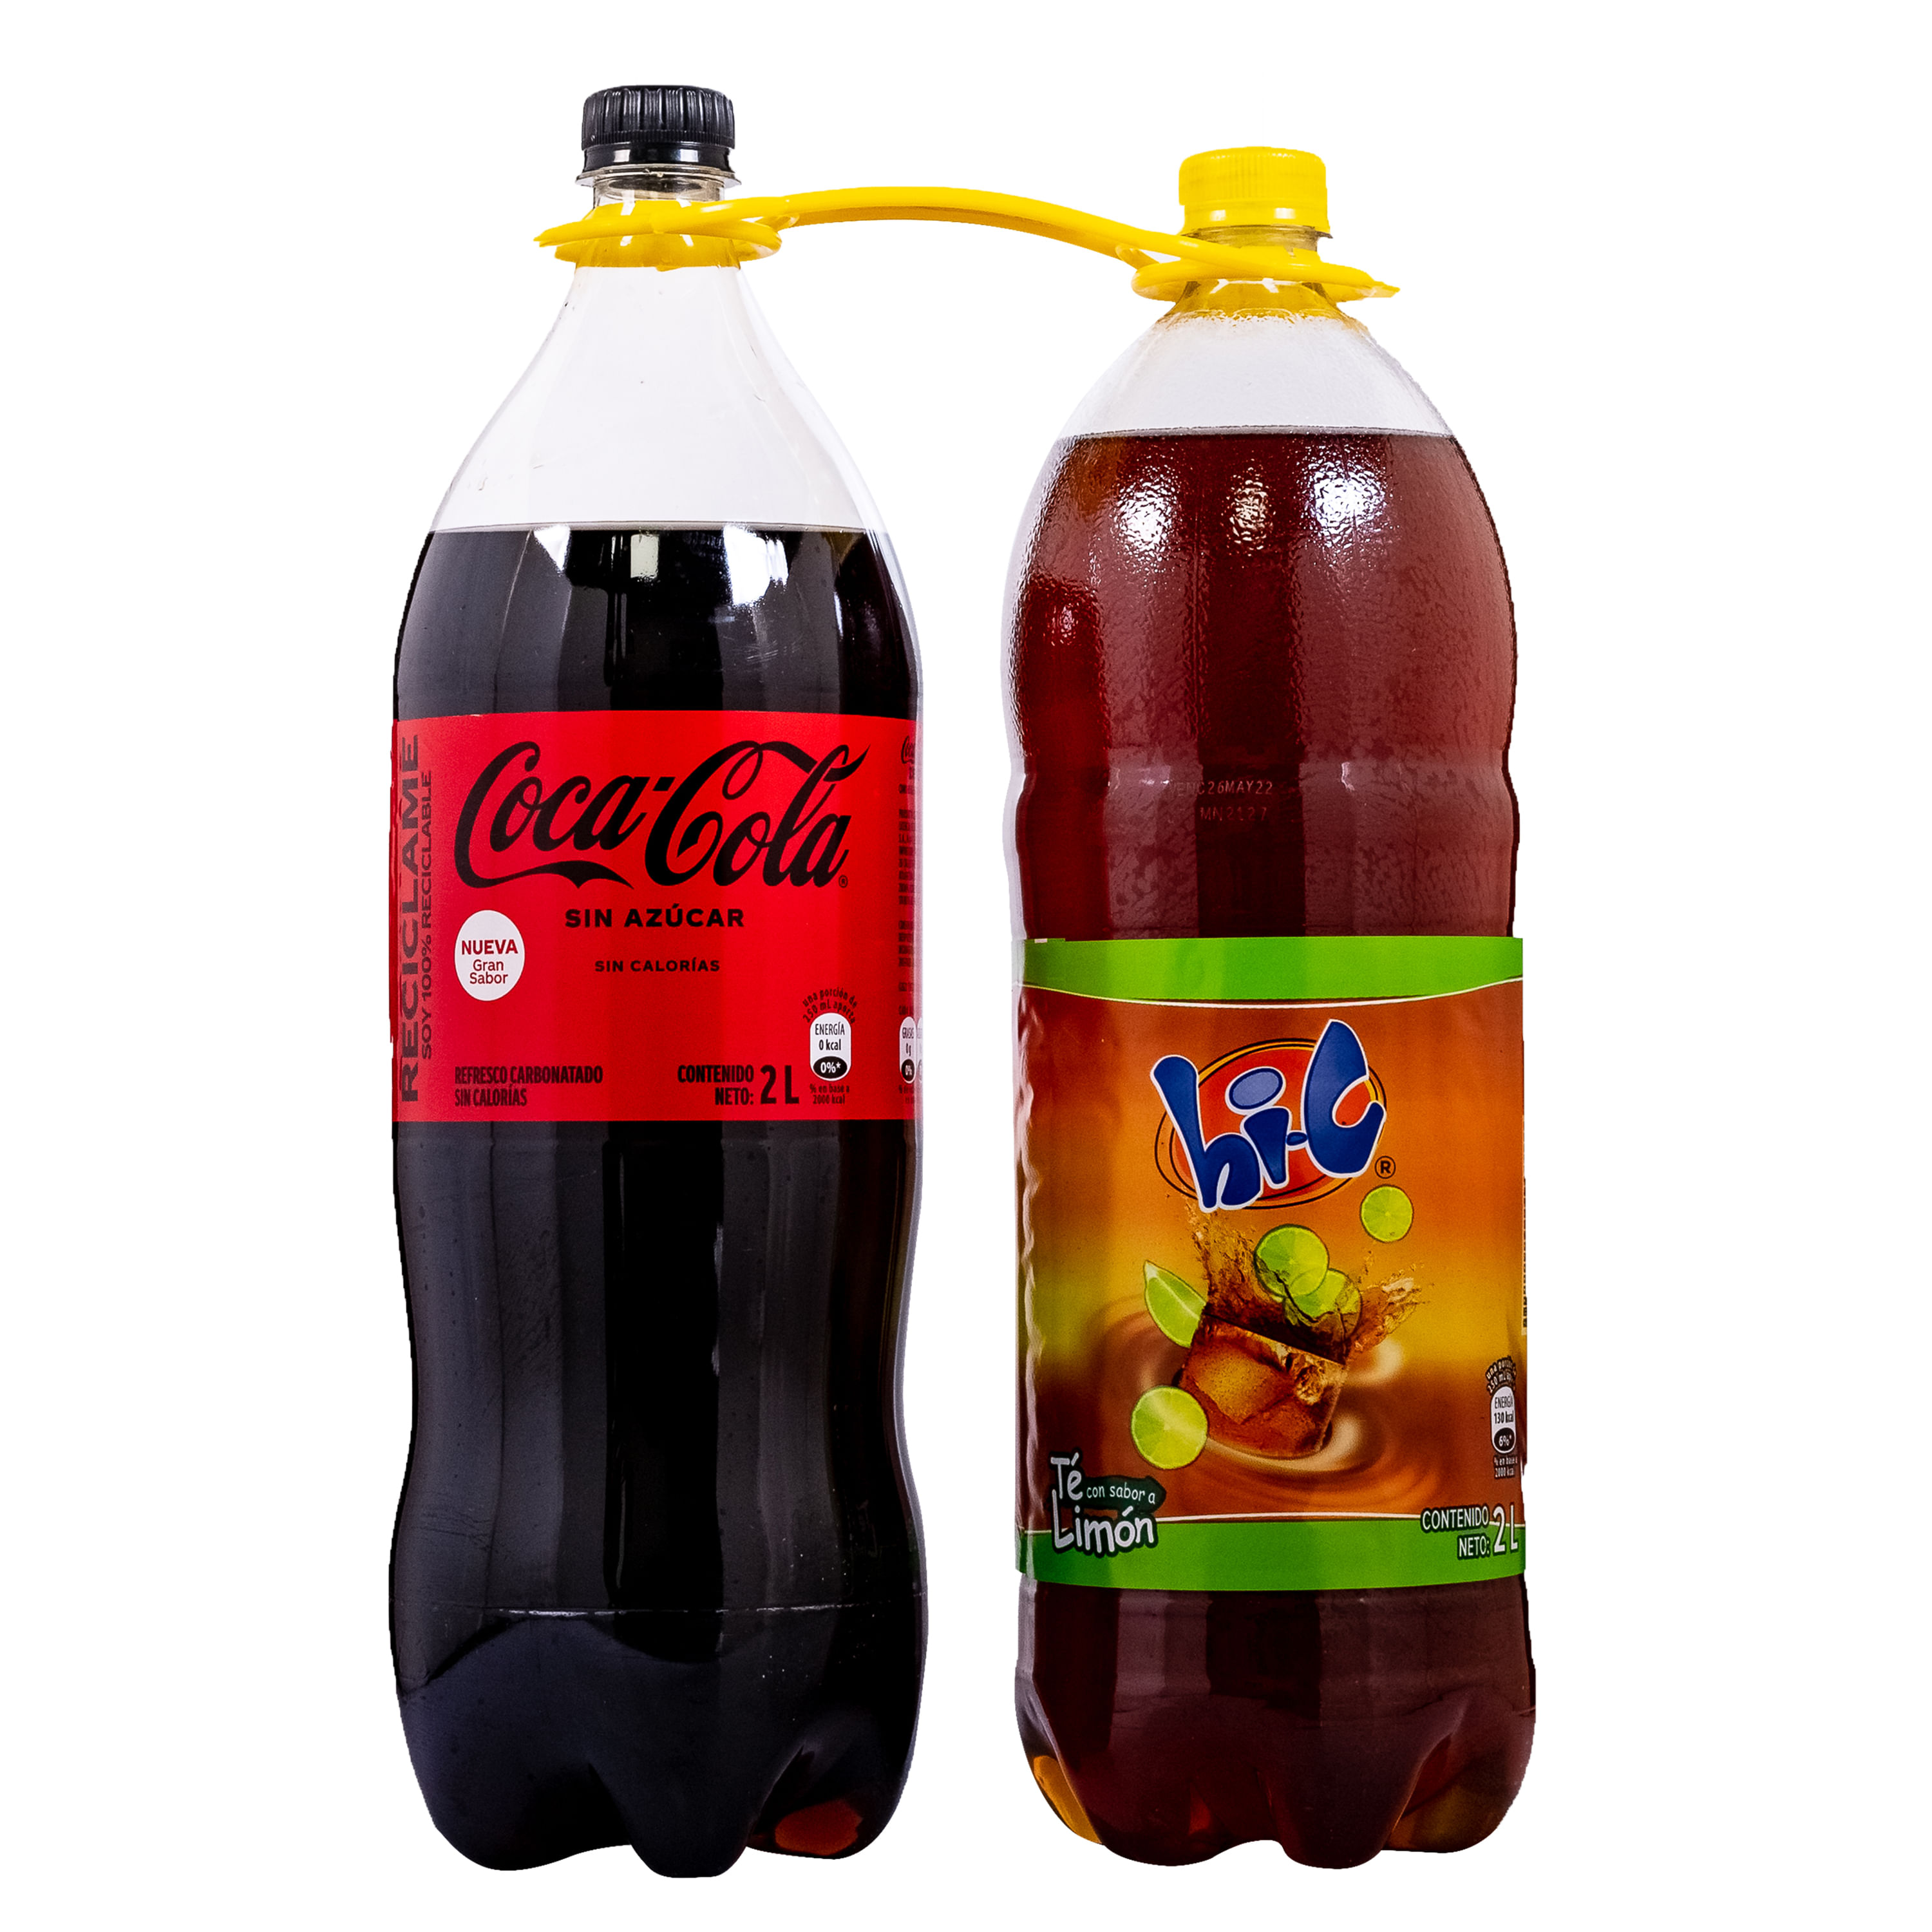 QLASH continuará con Hola Cola, la marca de refrescos de